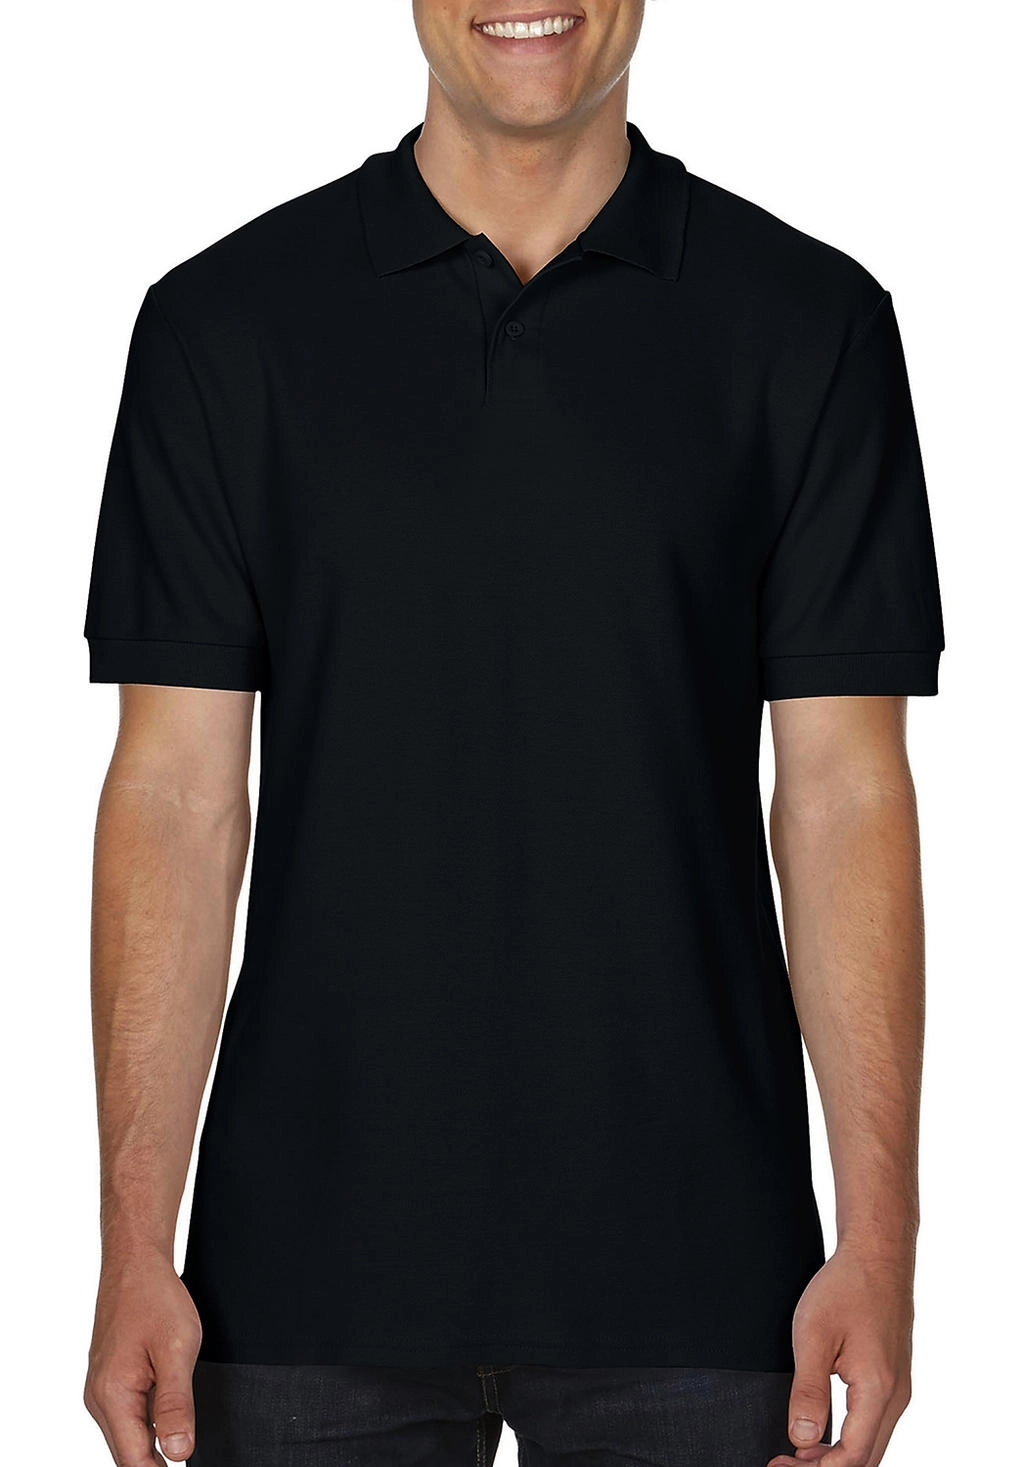 Softstyle® Adult Double Pique Polo zum Besticken und Bedrucken in der Farbe Black mit Ihren Logo, Schriftzug oder Motiv.